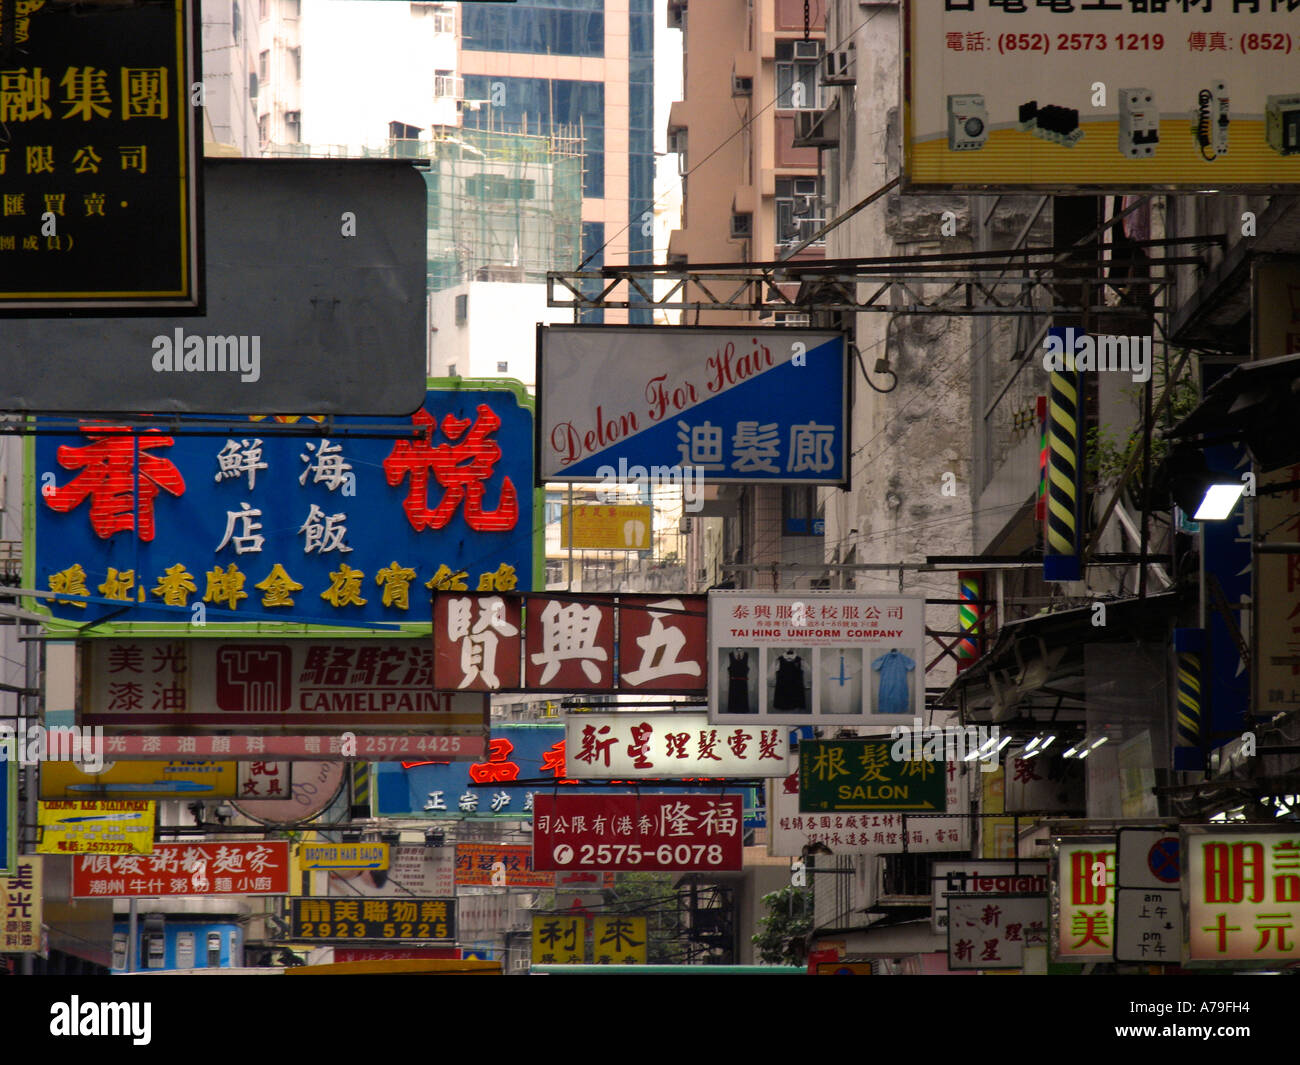 Shoppingstreet in Hongkongs District Wan Chai Stock Photo